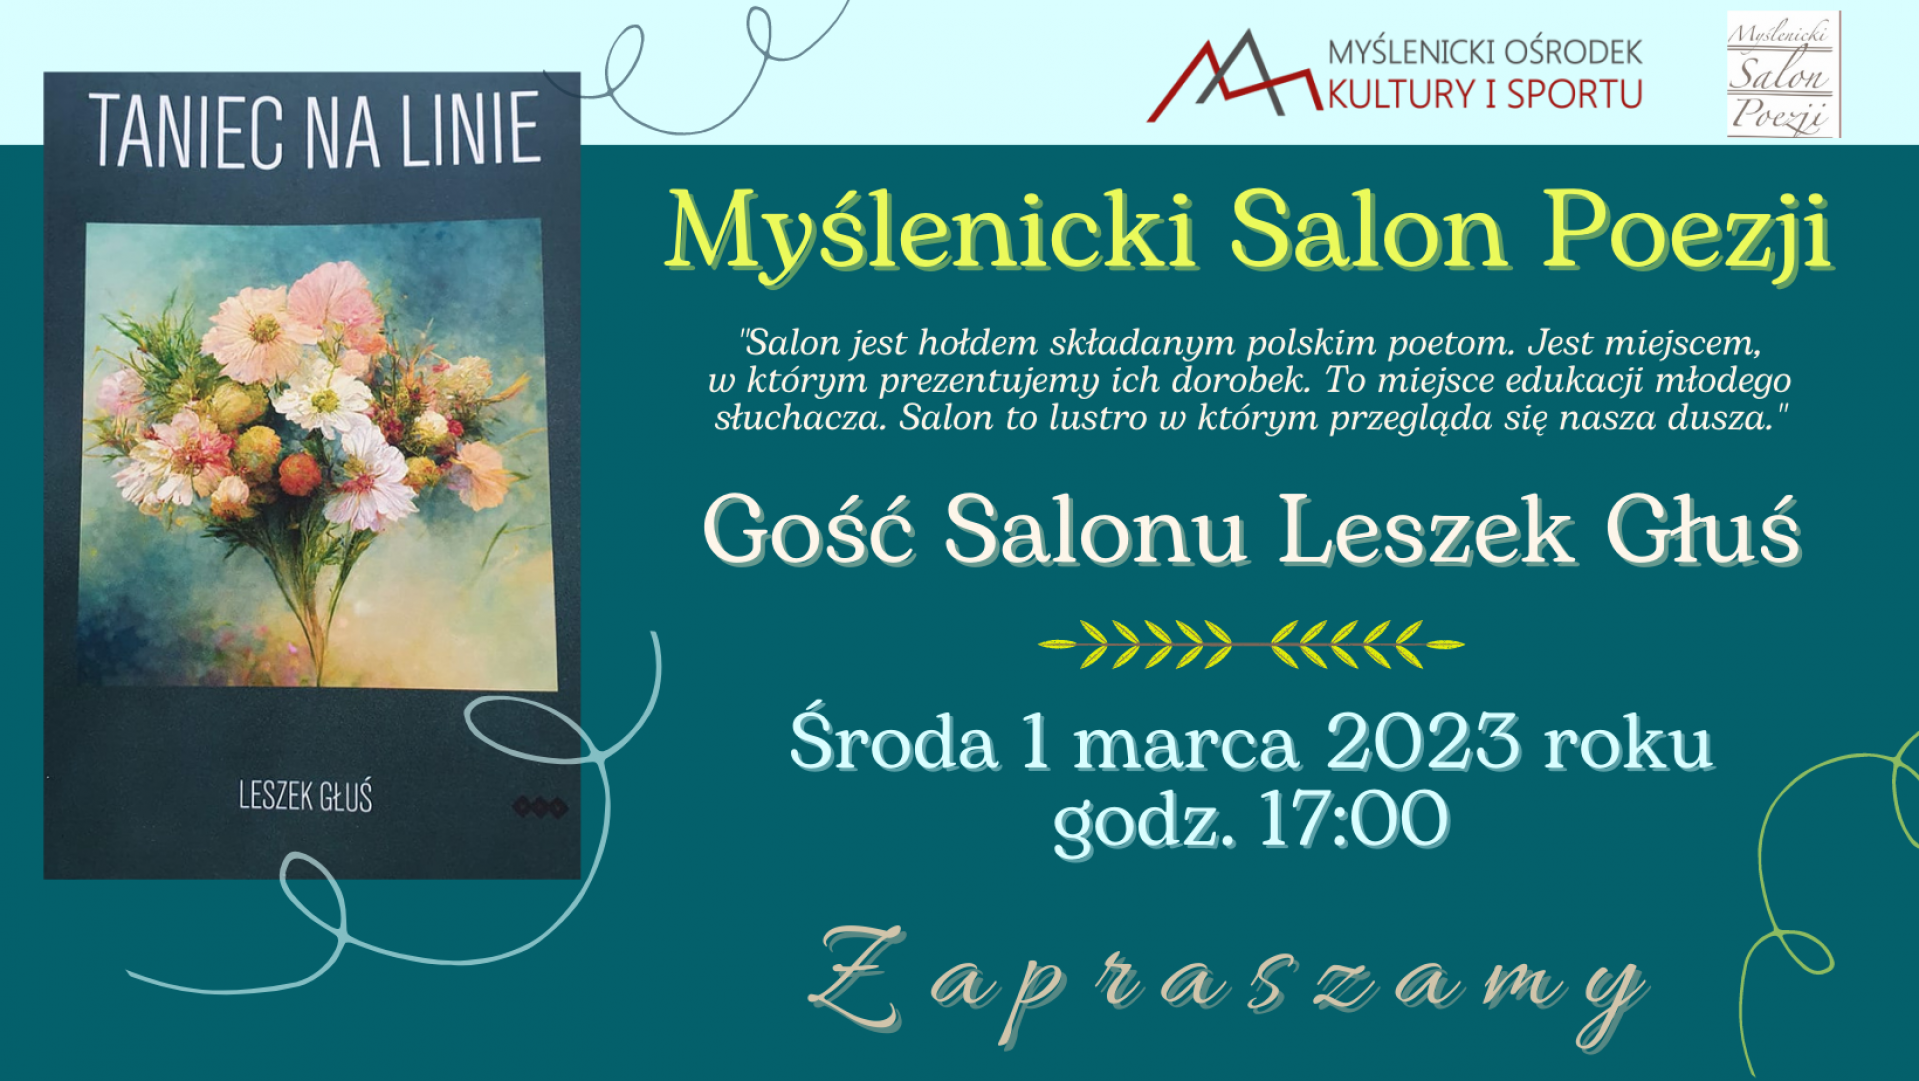 Myślenicki Salon Poezji - 01.03.2023 - zapraszamy